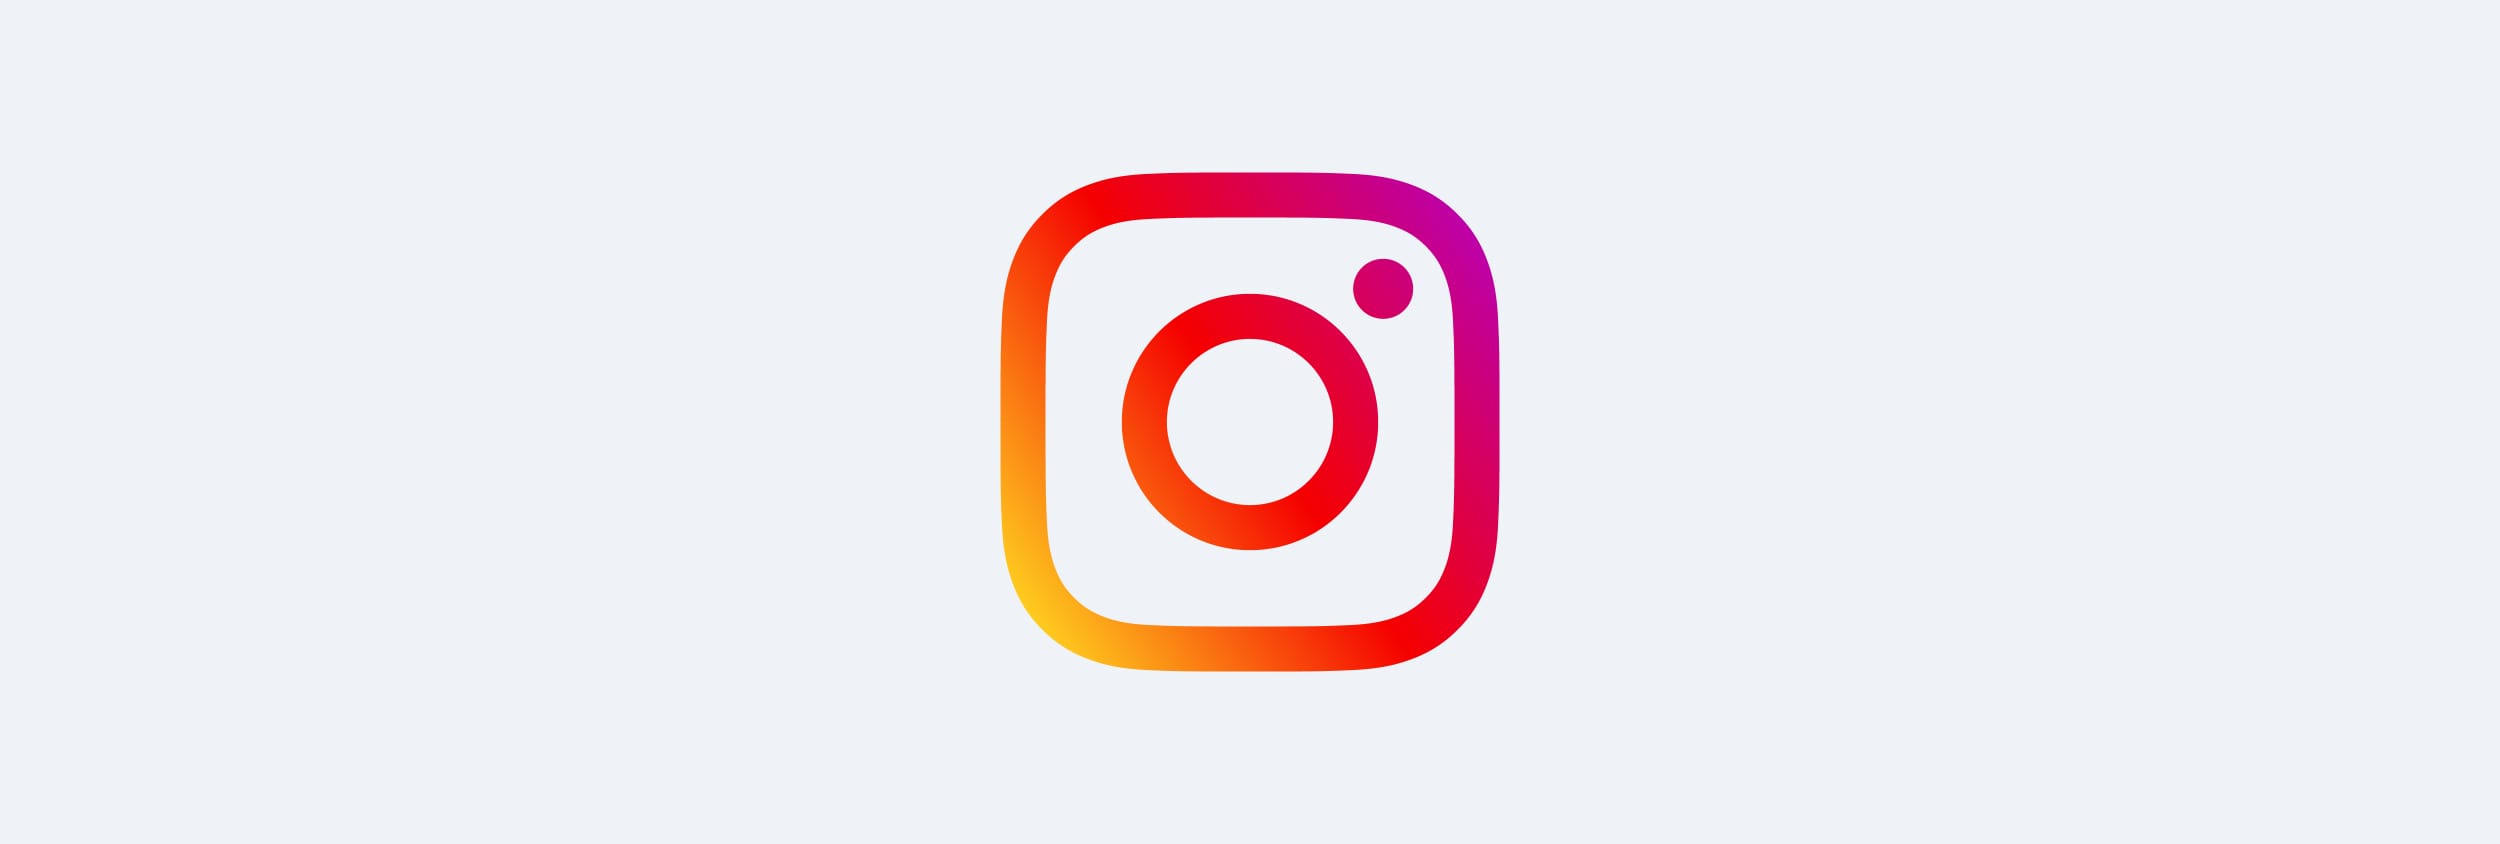 Instagram Access Token erzeugen: So verbindest du dich mit der API